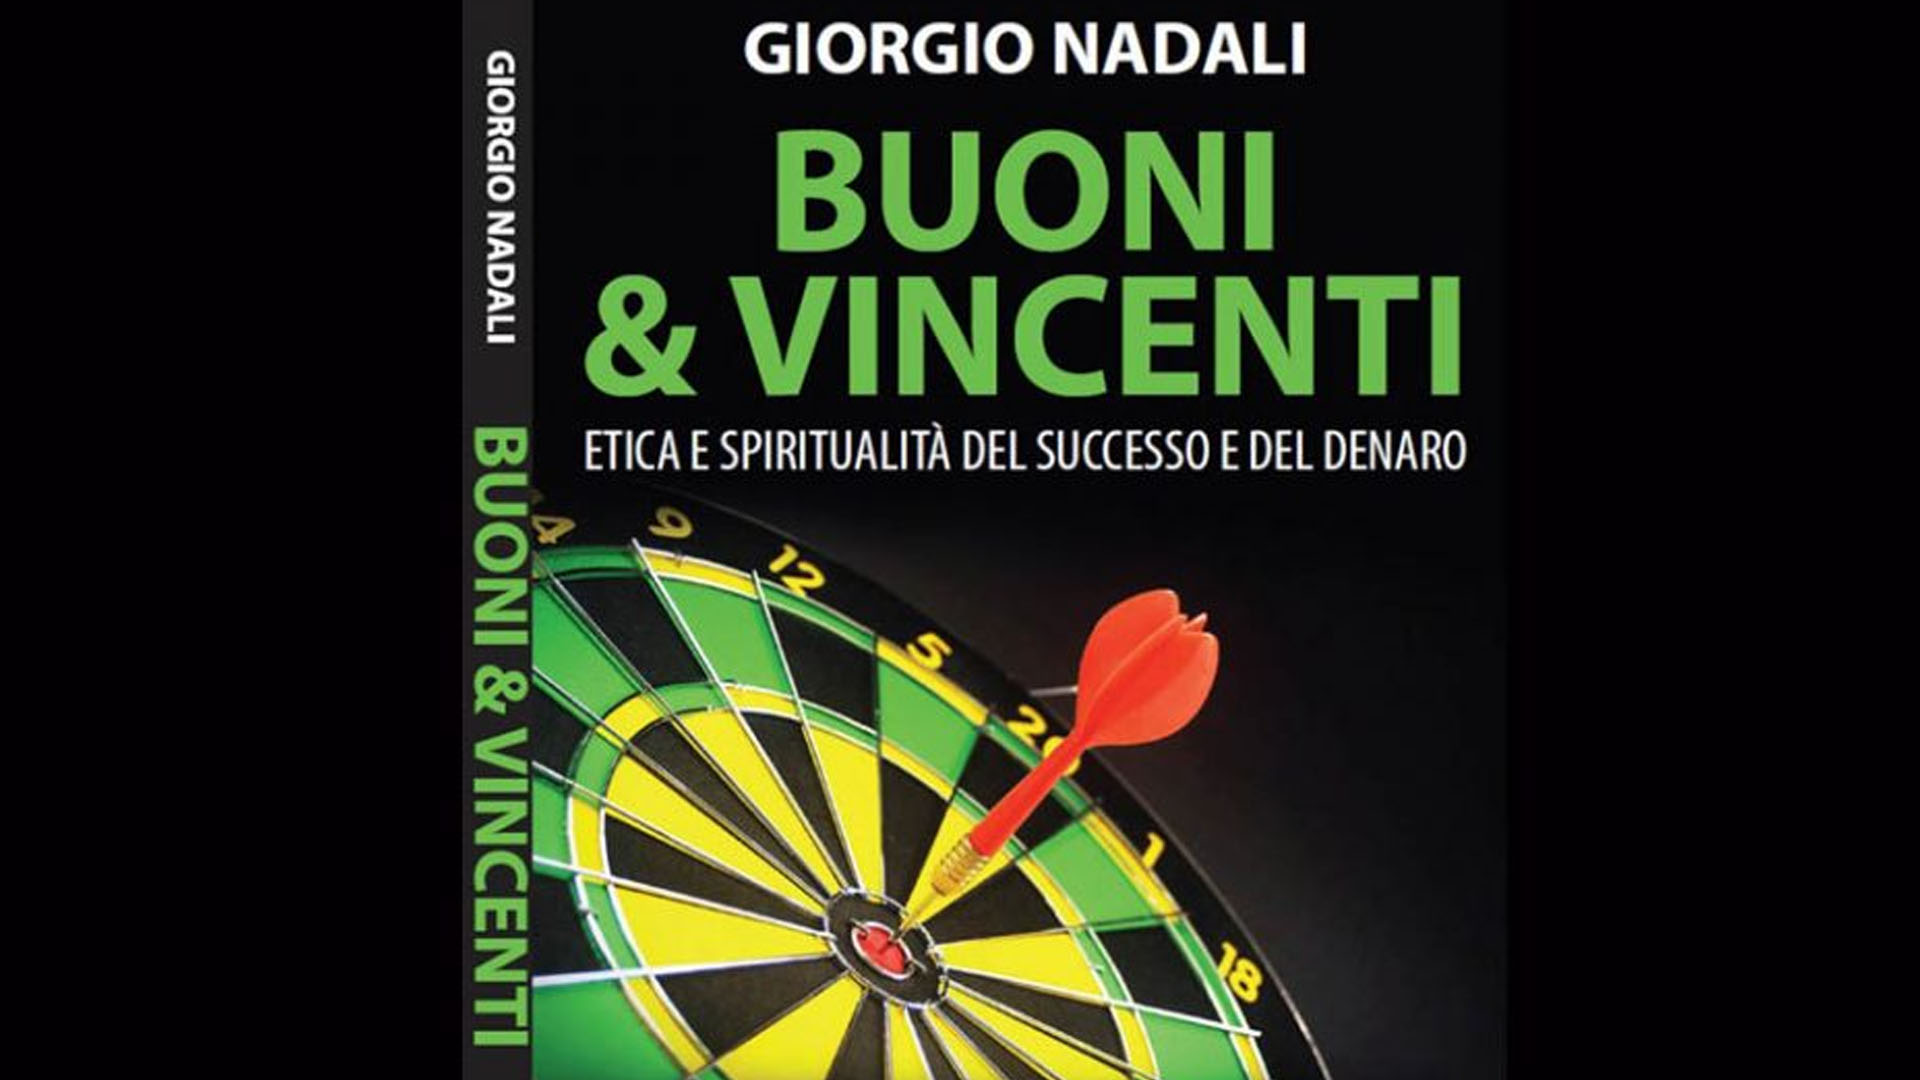 Buoni & Vincenti. Etica e spiritualità del successo e del denaro di Giorgio Nadali